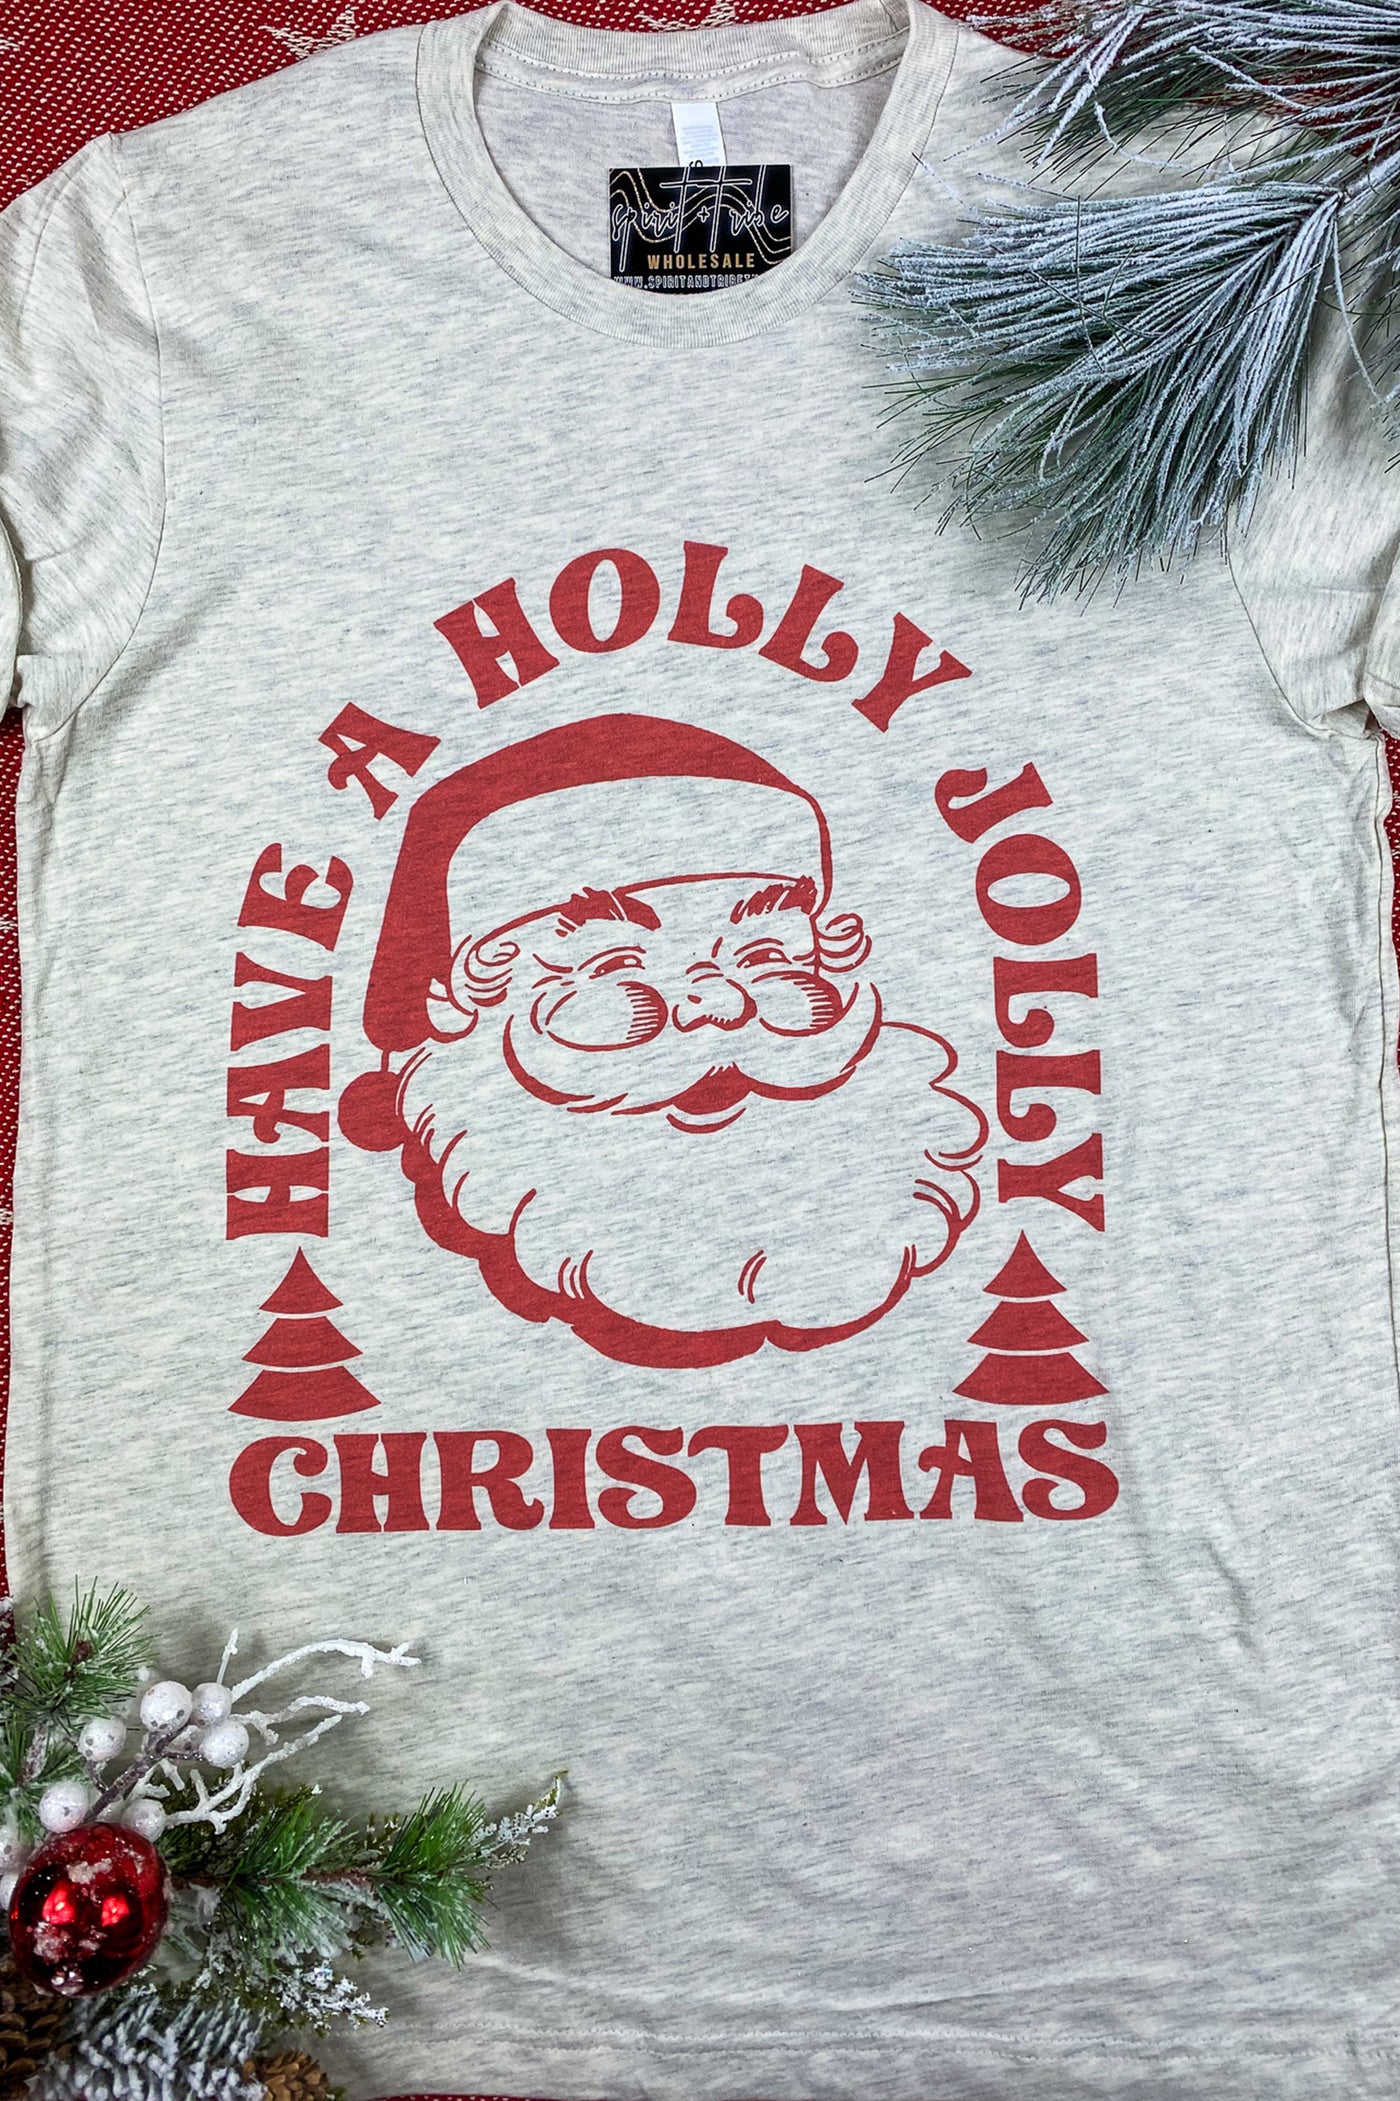 HOLLY JOLLY CHRISTMAS